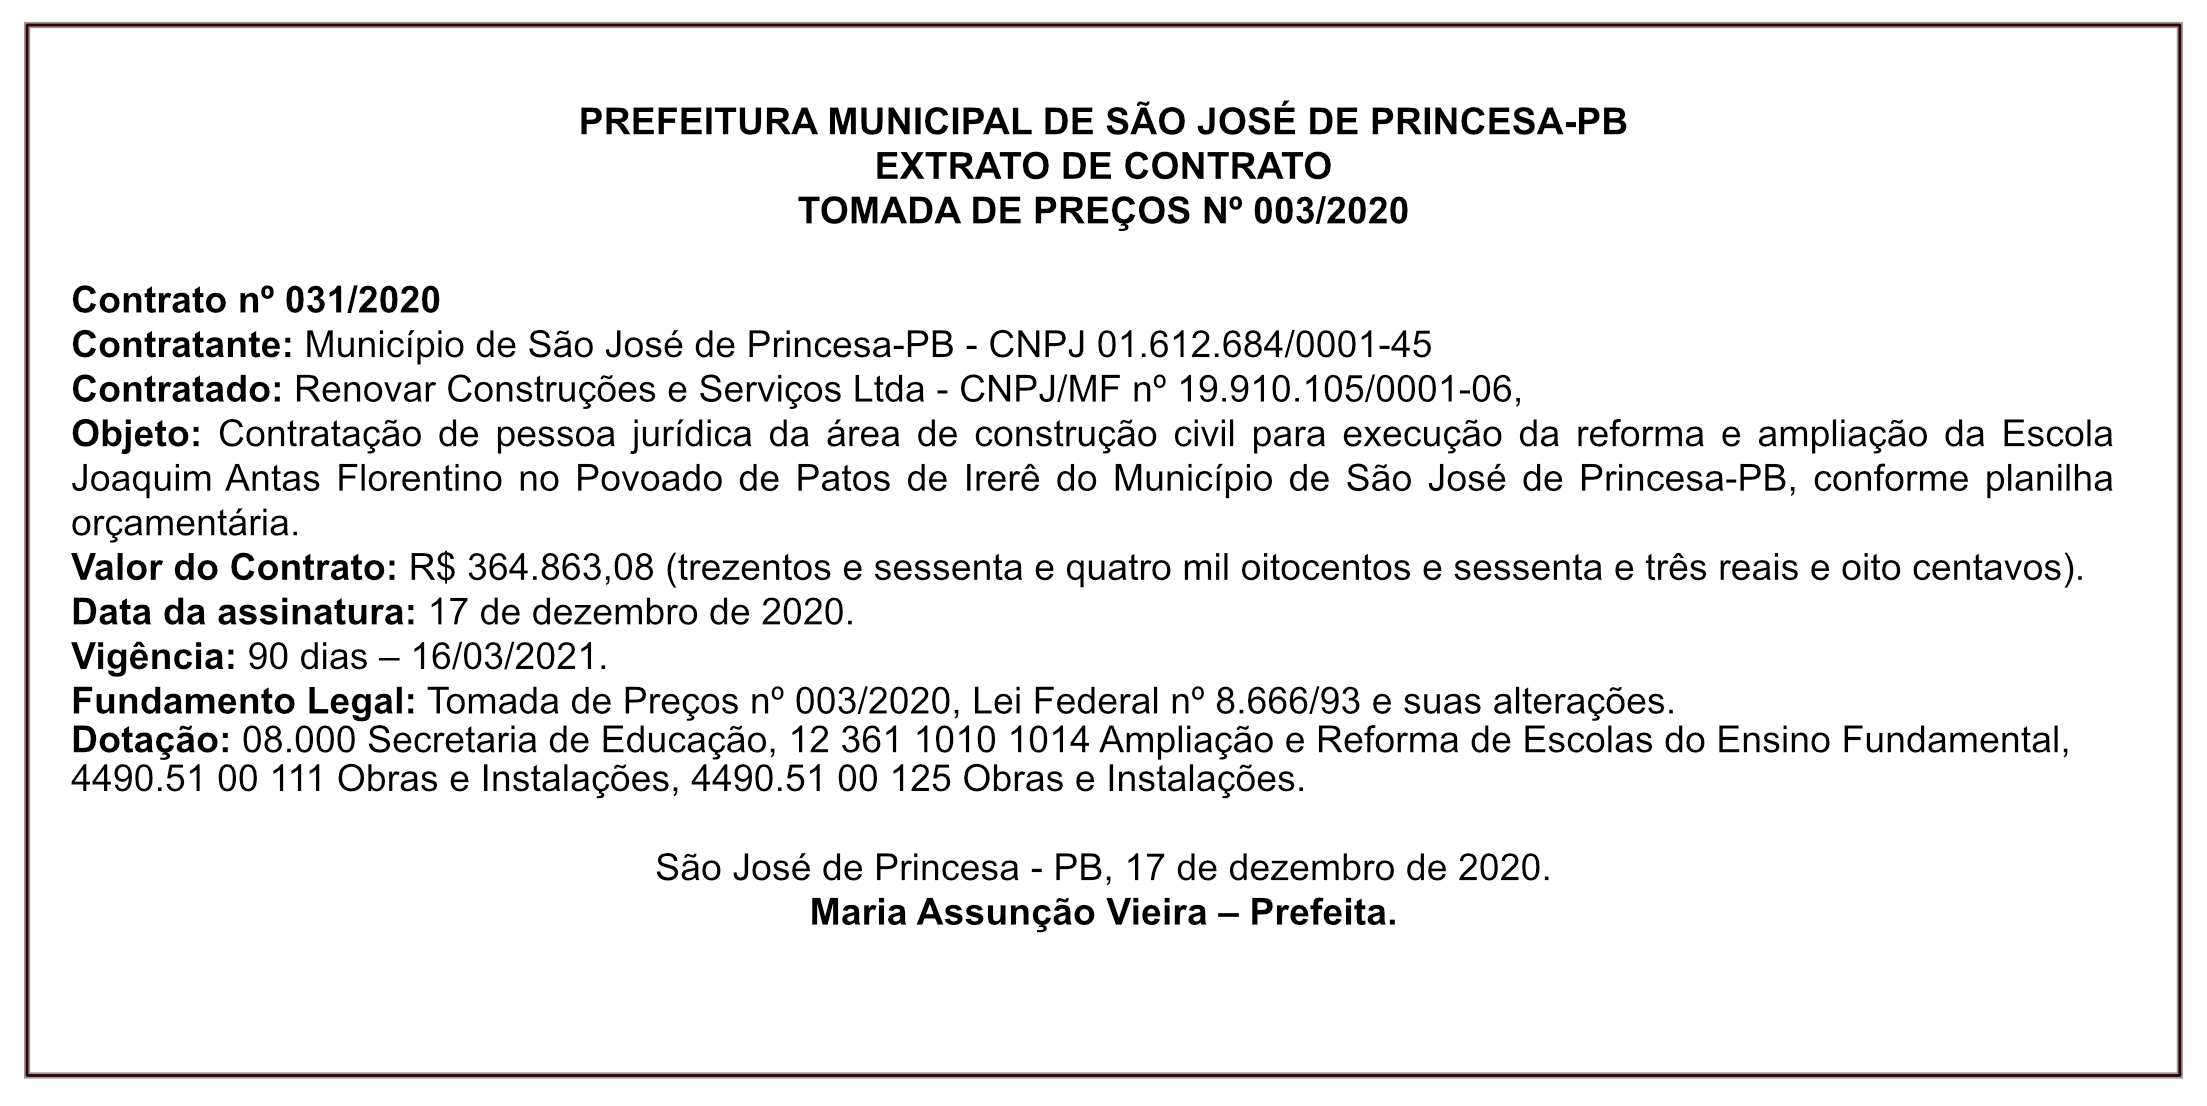 PREFEITURA MUNICIPAL DE SÃO JOSÉ DE PRINCESA-PB – EXTRATO DE CONTRATO – TOMADA DE PREÇOS Nº 003/2020